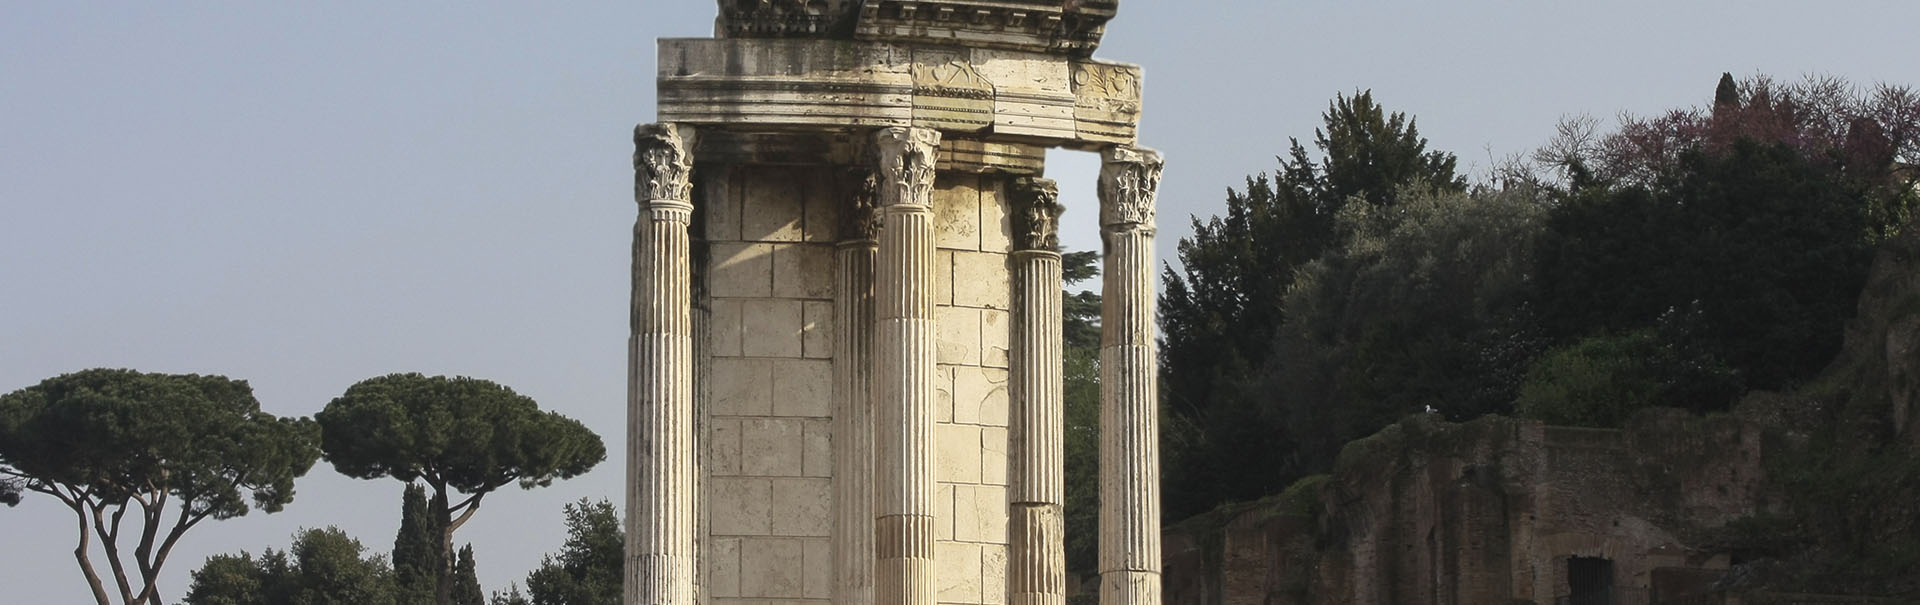 Dea Romana - Tempio di Vesta - Temple of Vesta and House of Vestal Virgins